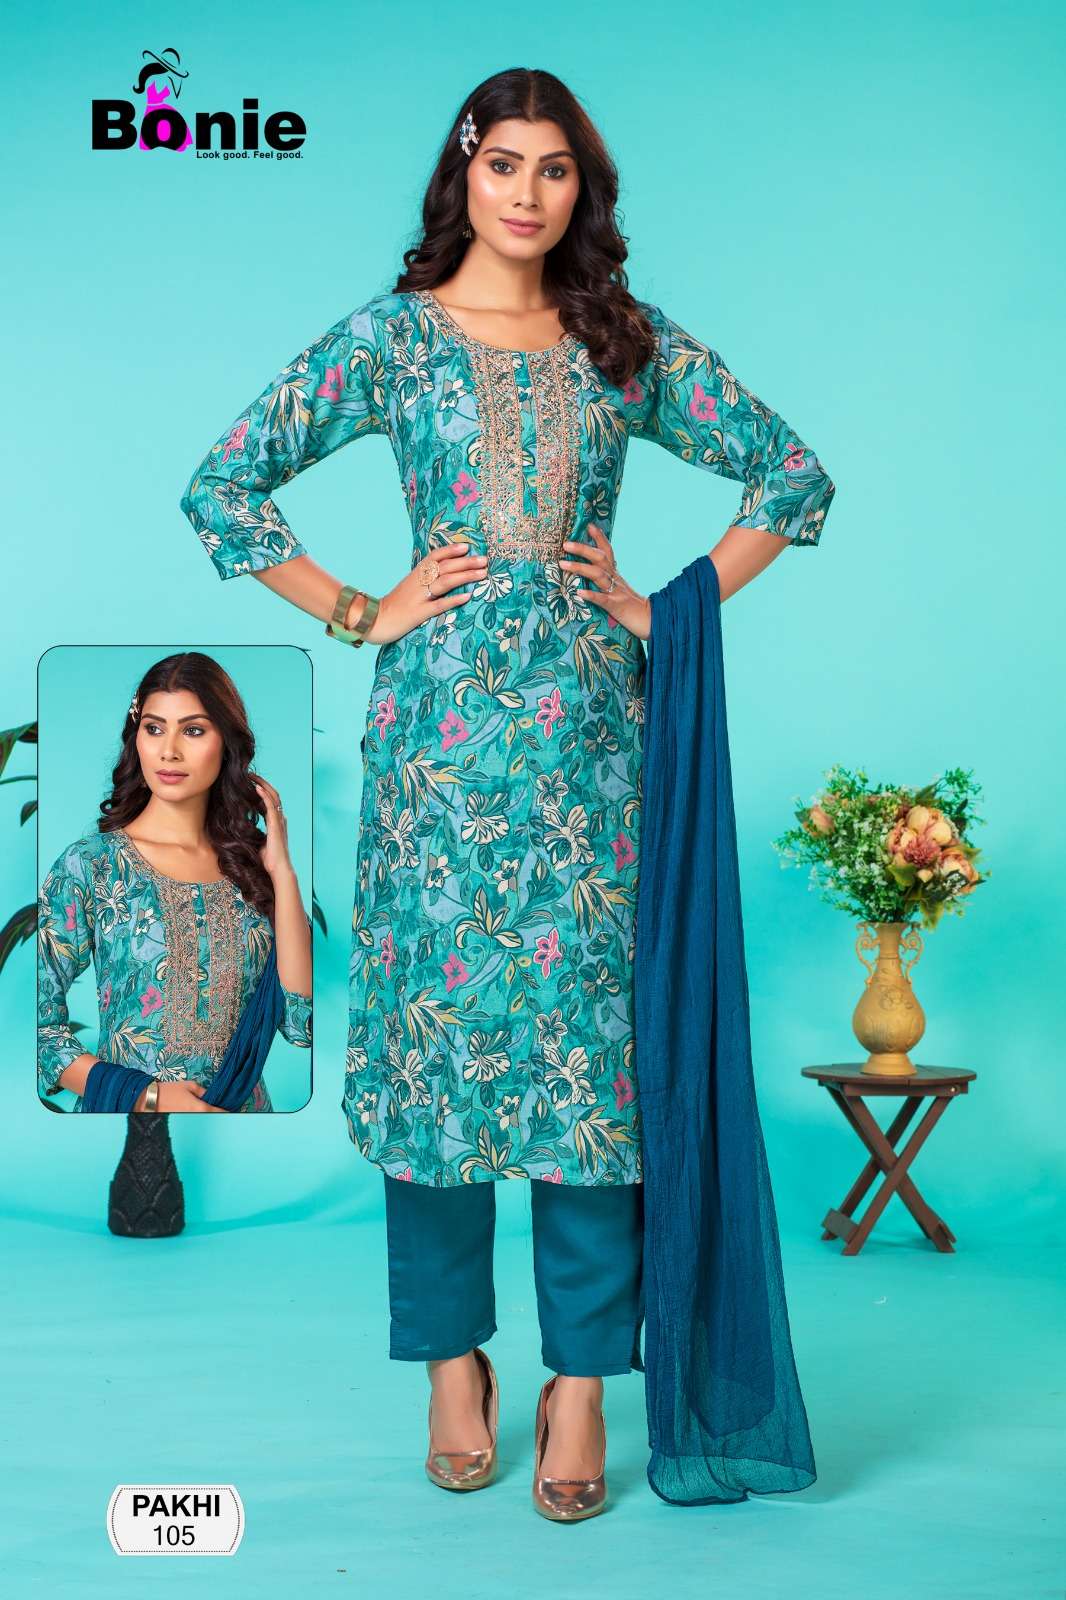 bonie pakhi 101-106 series latest designer kurti set wholesaler surat gujarat